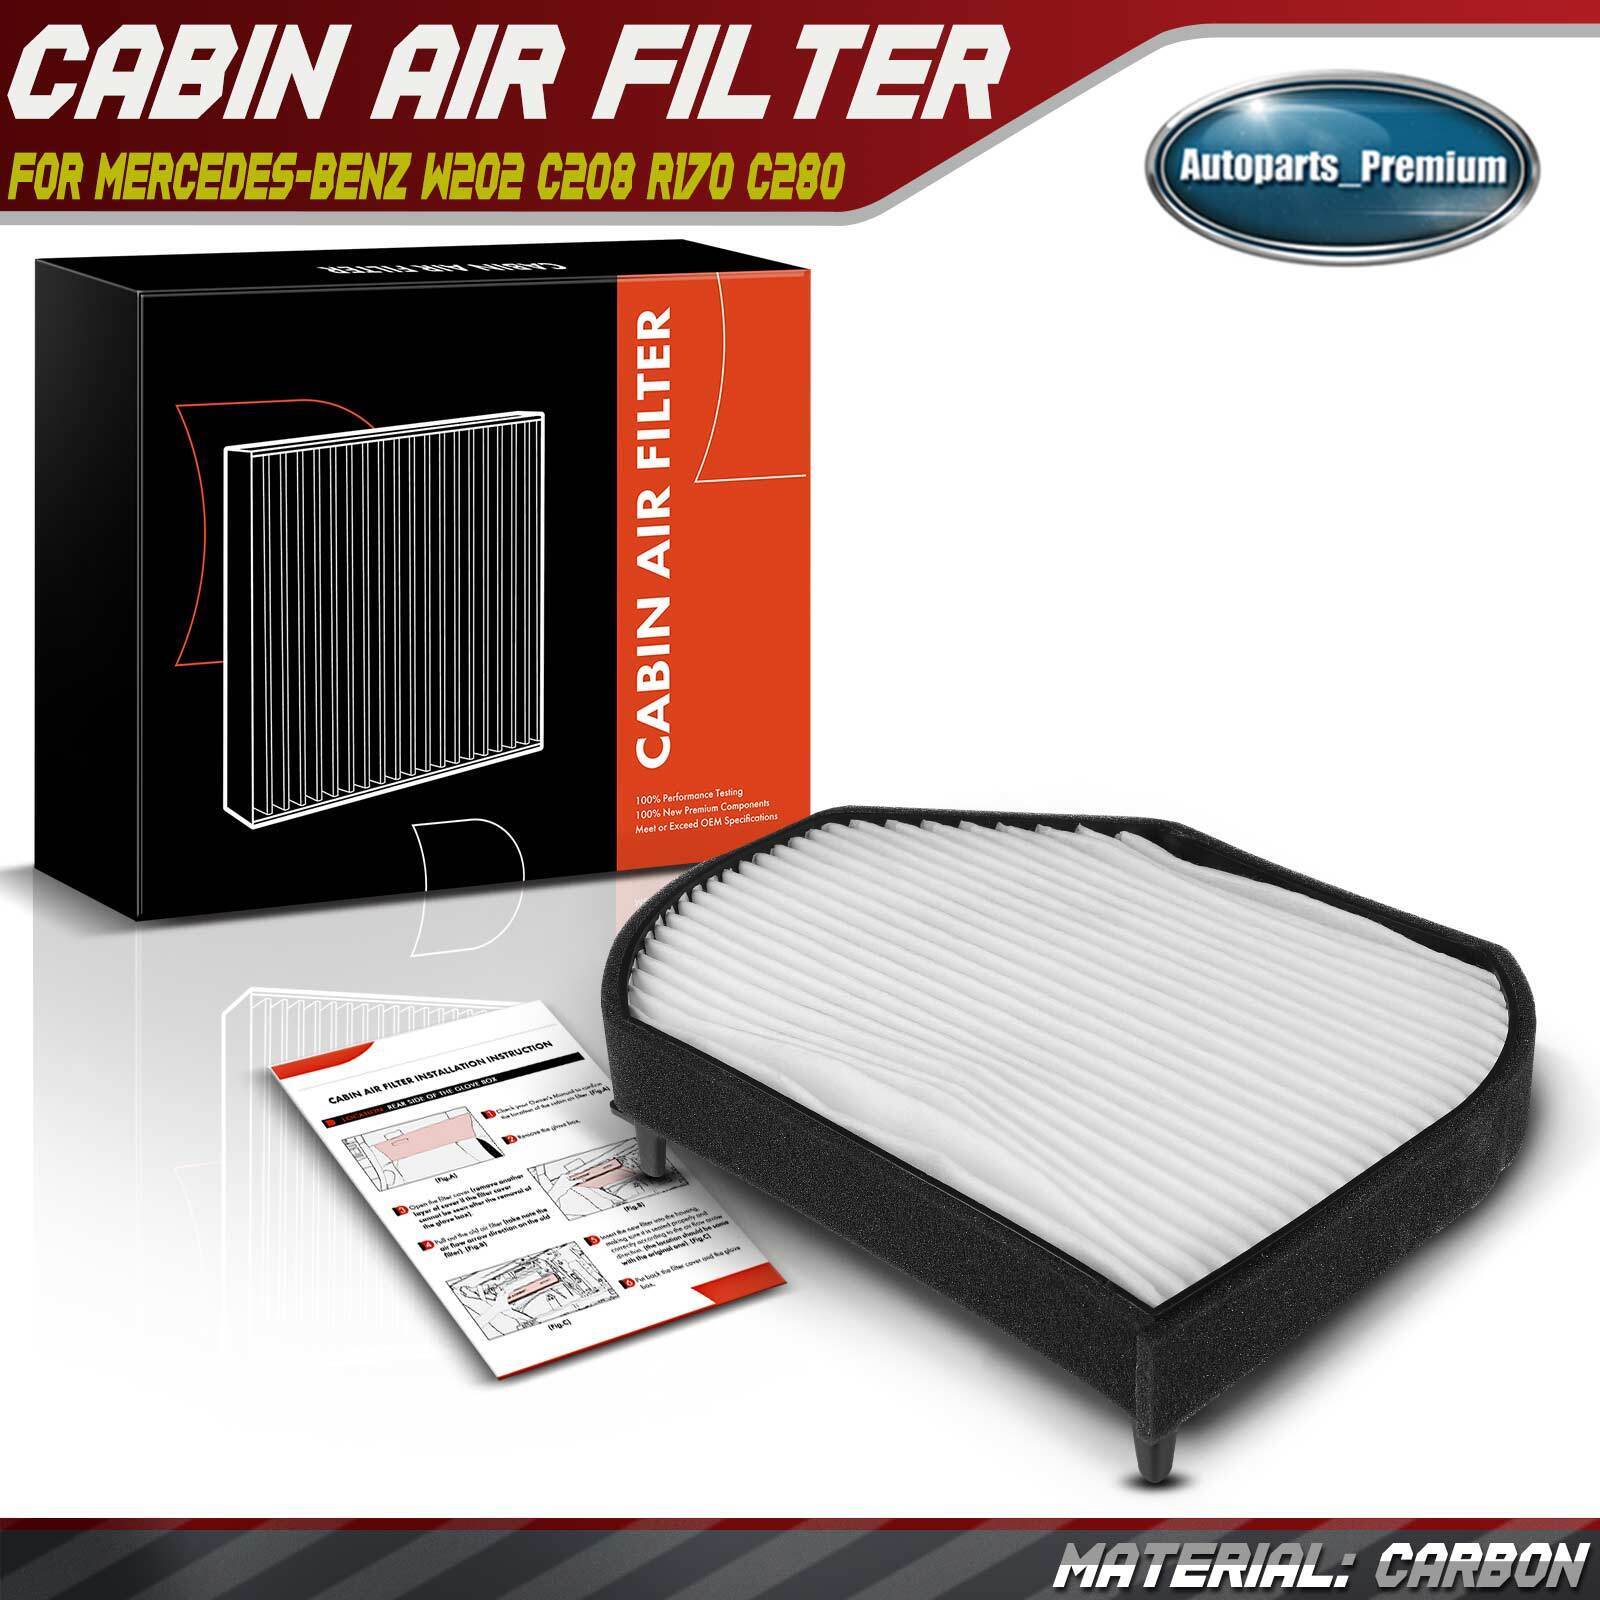 Cabin Air Filter for Mercedes-Benz W202 C208 A208 C280 CLK320 SLK230 Chrysler